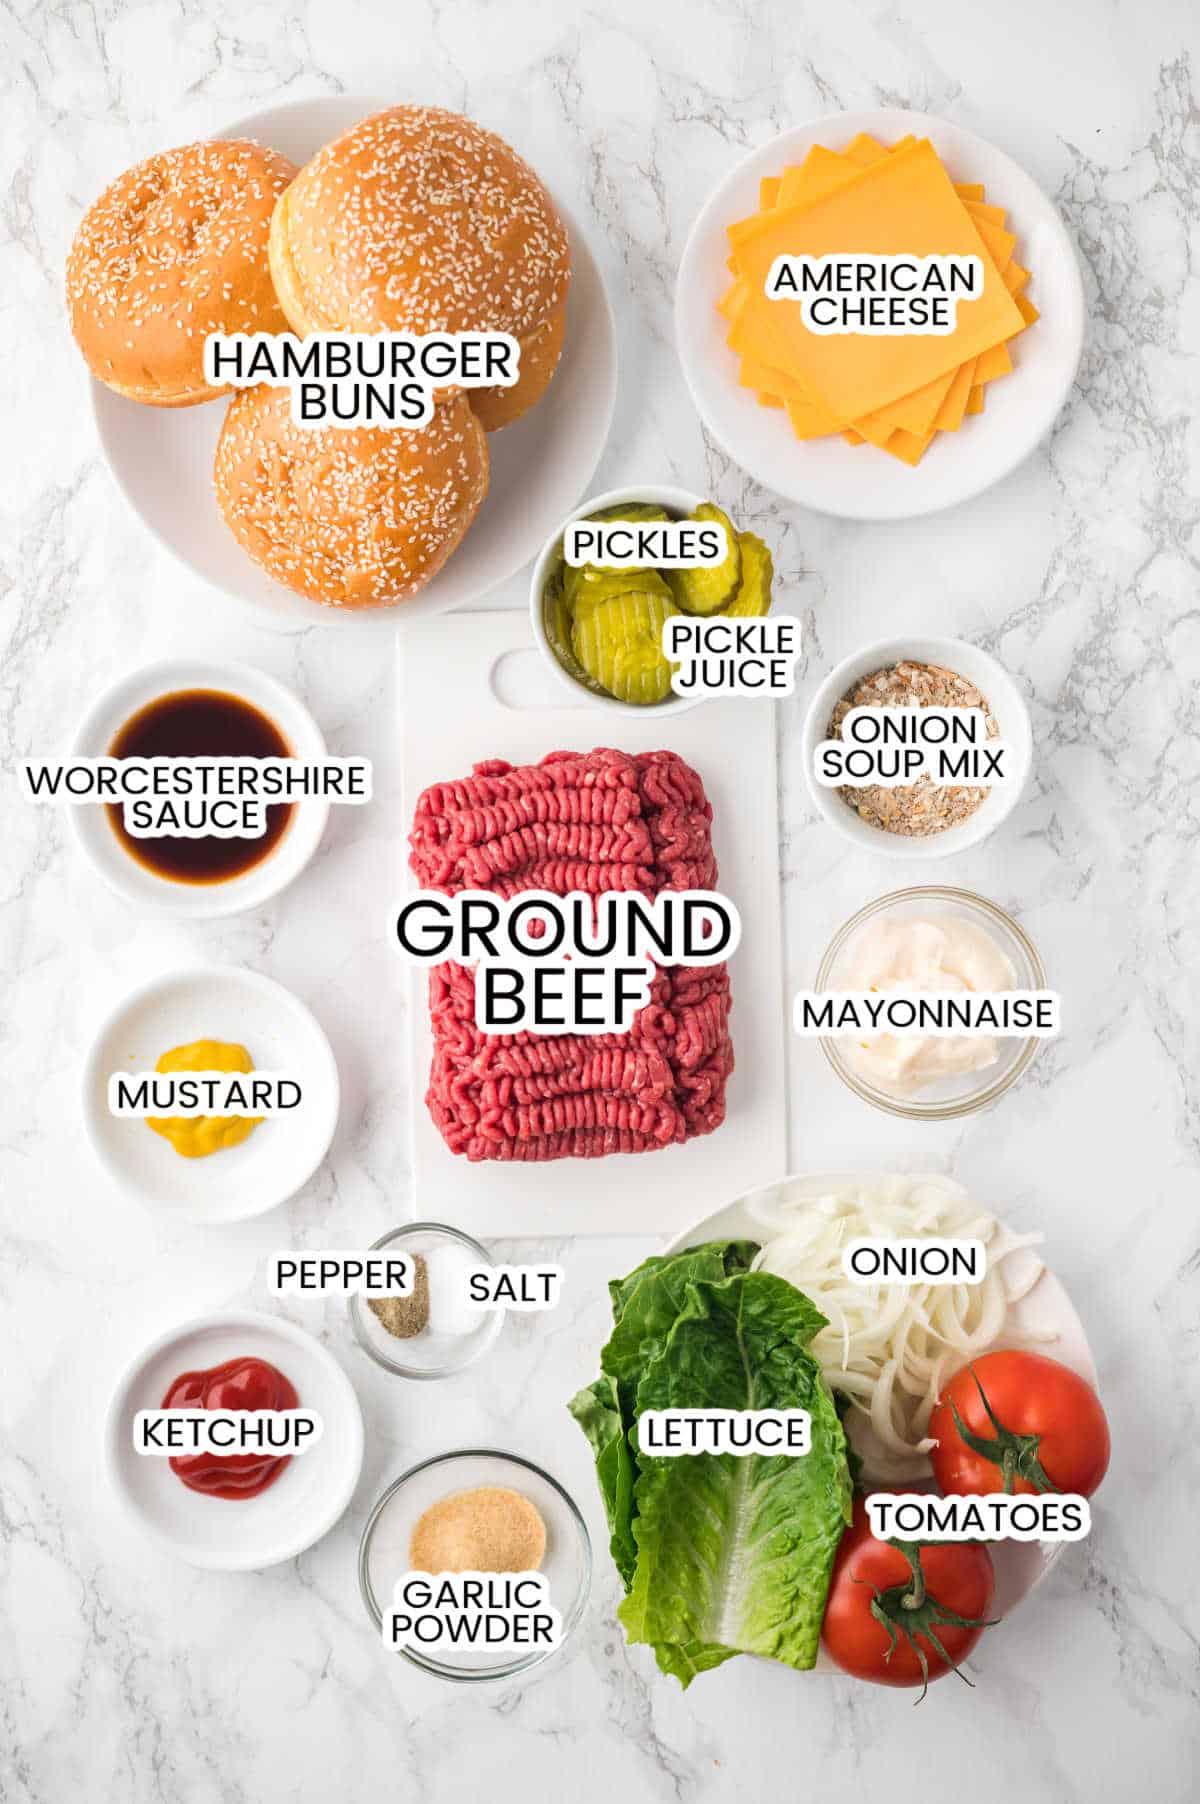 Ingredients to make air fryer juicy lucy burgers.